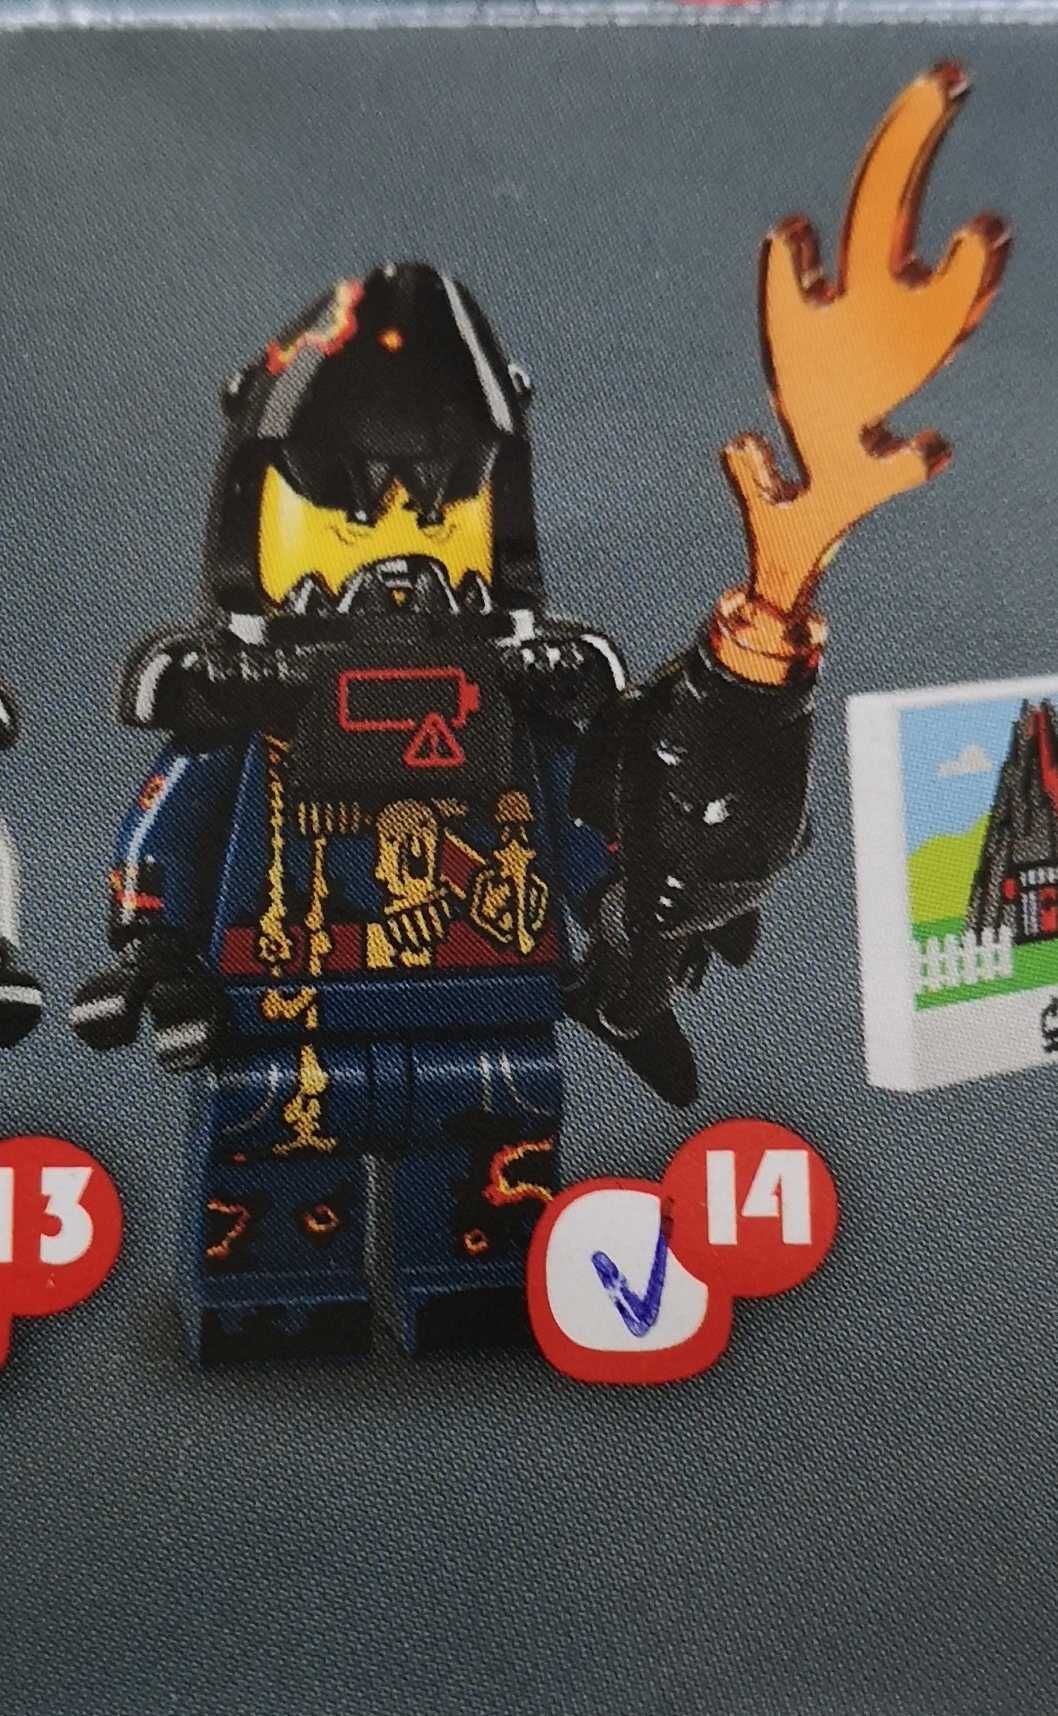 Lego minifigures seria Ninjago Movie - 71019 - żarłacz armii